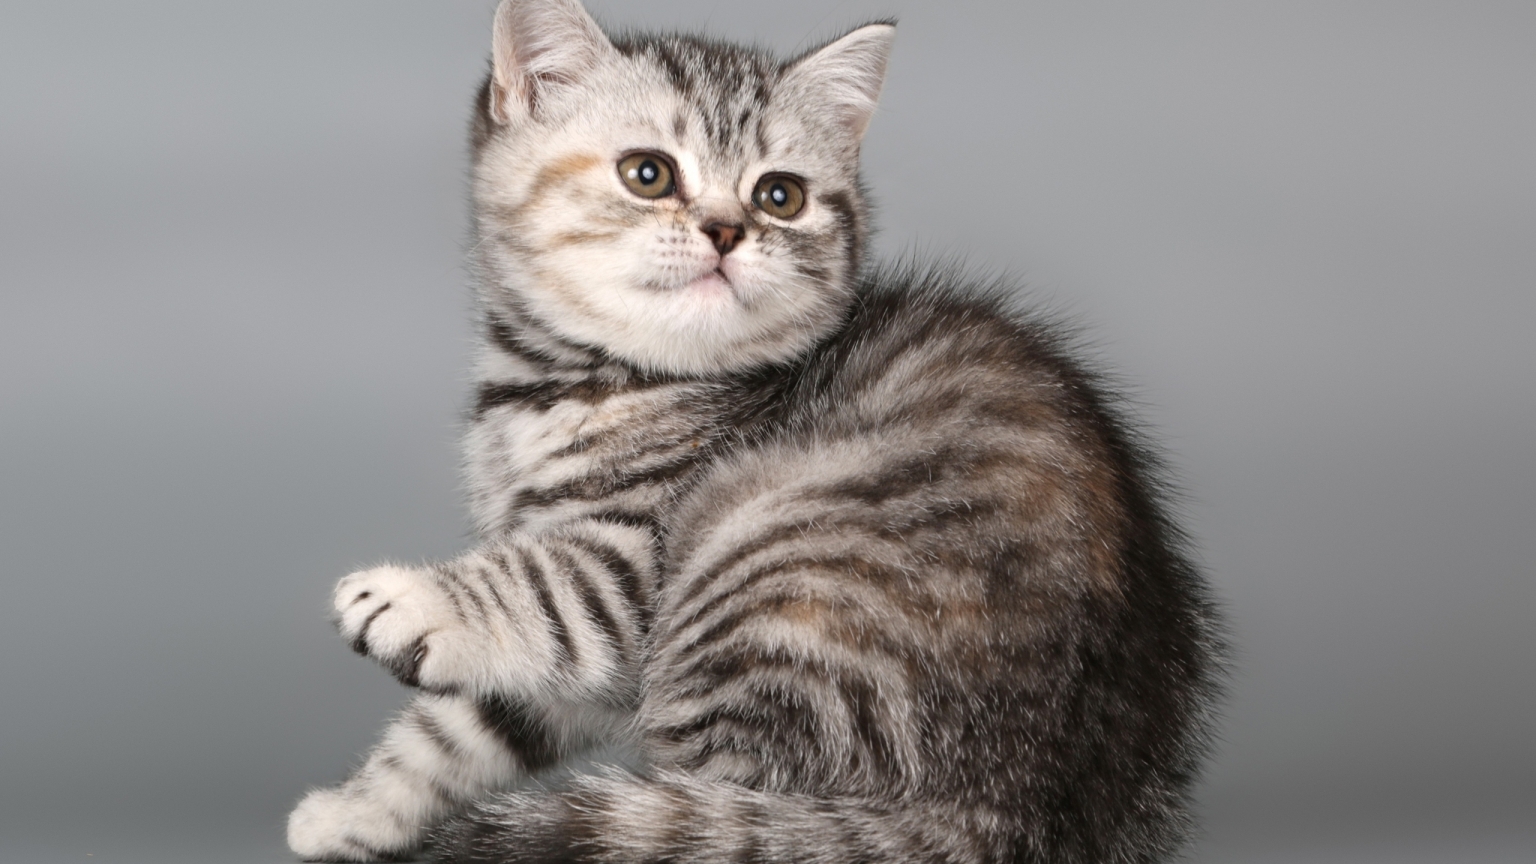 British Shorthair Kitten for 1536 x 864 HDTV resolution